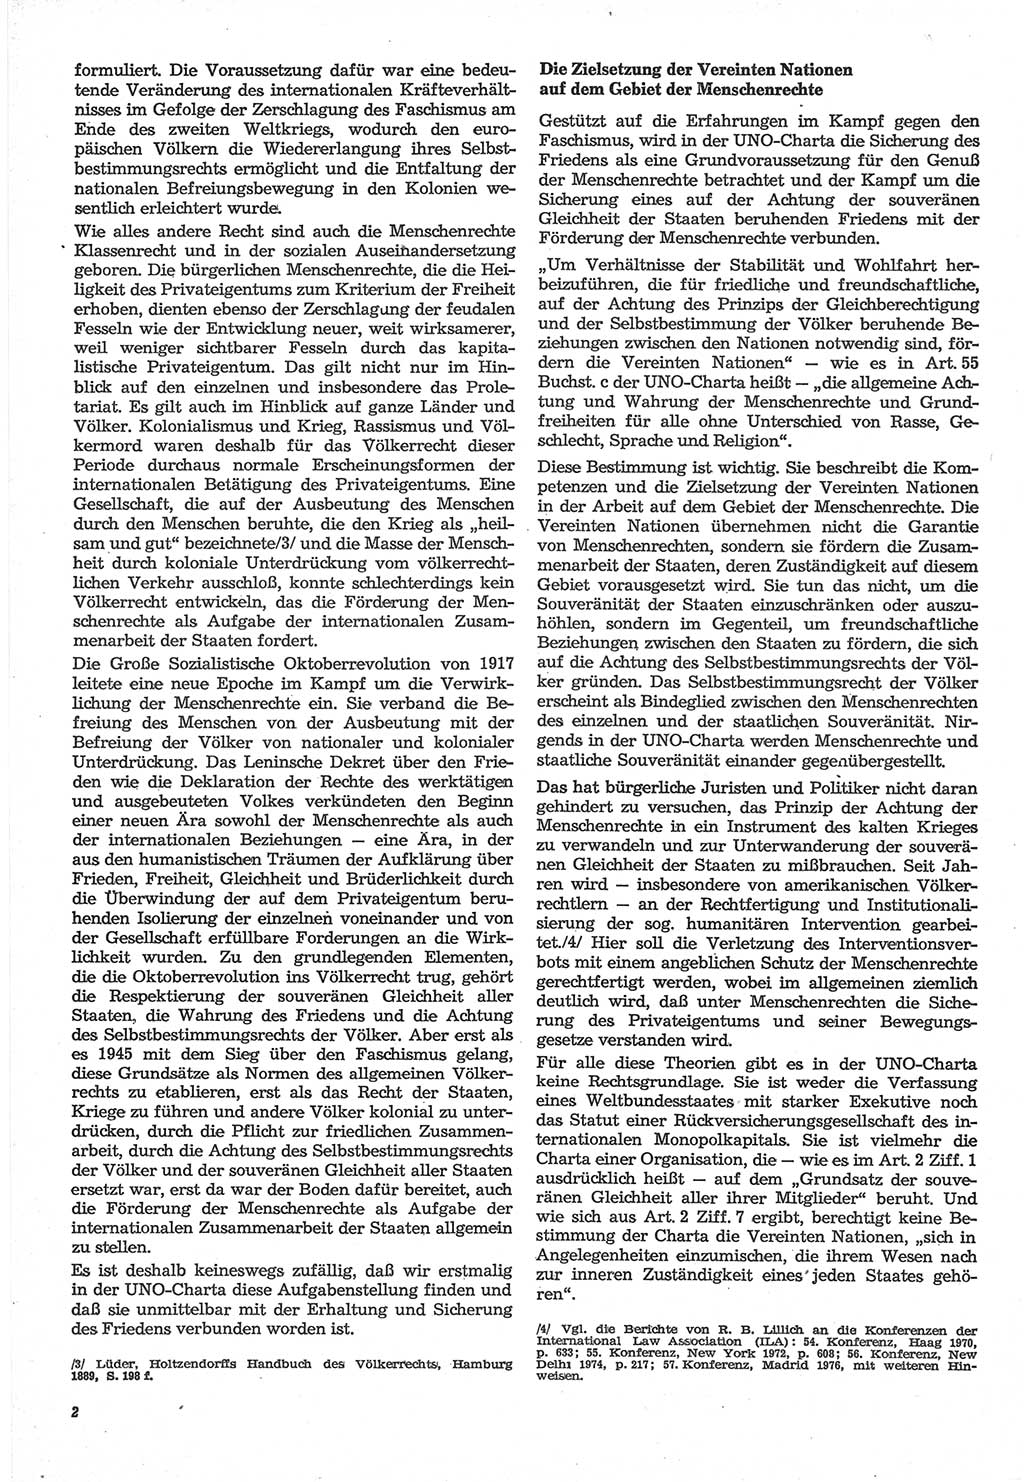 Neue Justiz (NJ), Zeitschrift für Recht und Rechtswissenschaft-Zeitschrift, sozialistisches Recht und Gesetzlichkeit, 31. Jahrgang 1977, Seite 2 (NJ DDR 1977, S. 2)